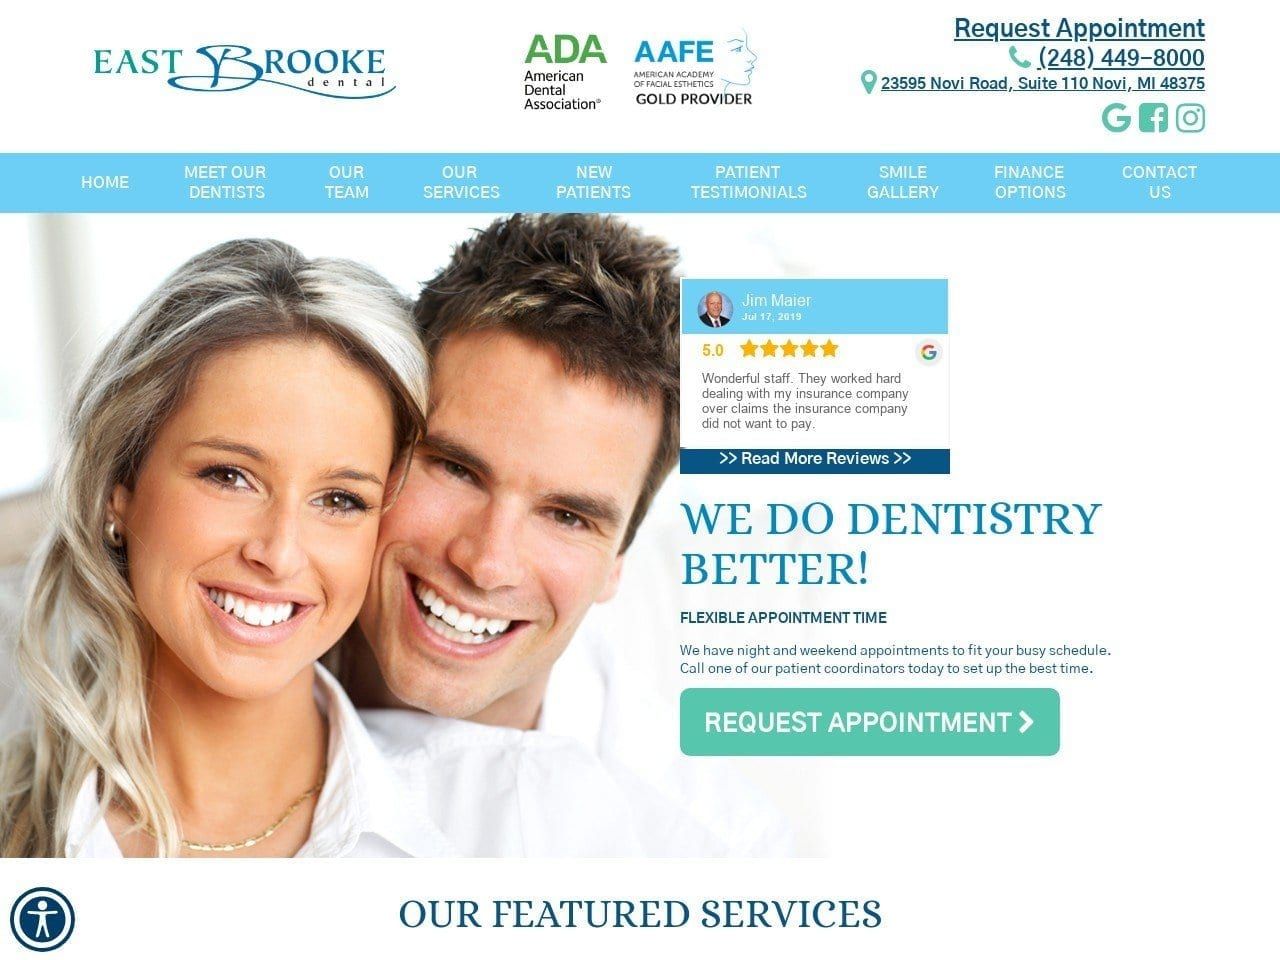 East Brooke Dental Website Screenshot from eastbrookedental.com